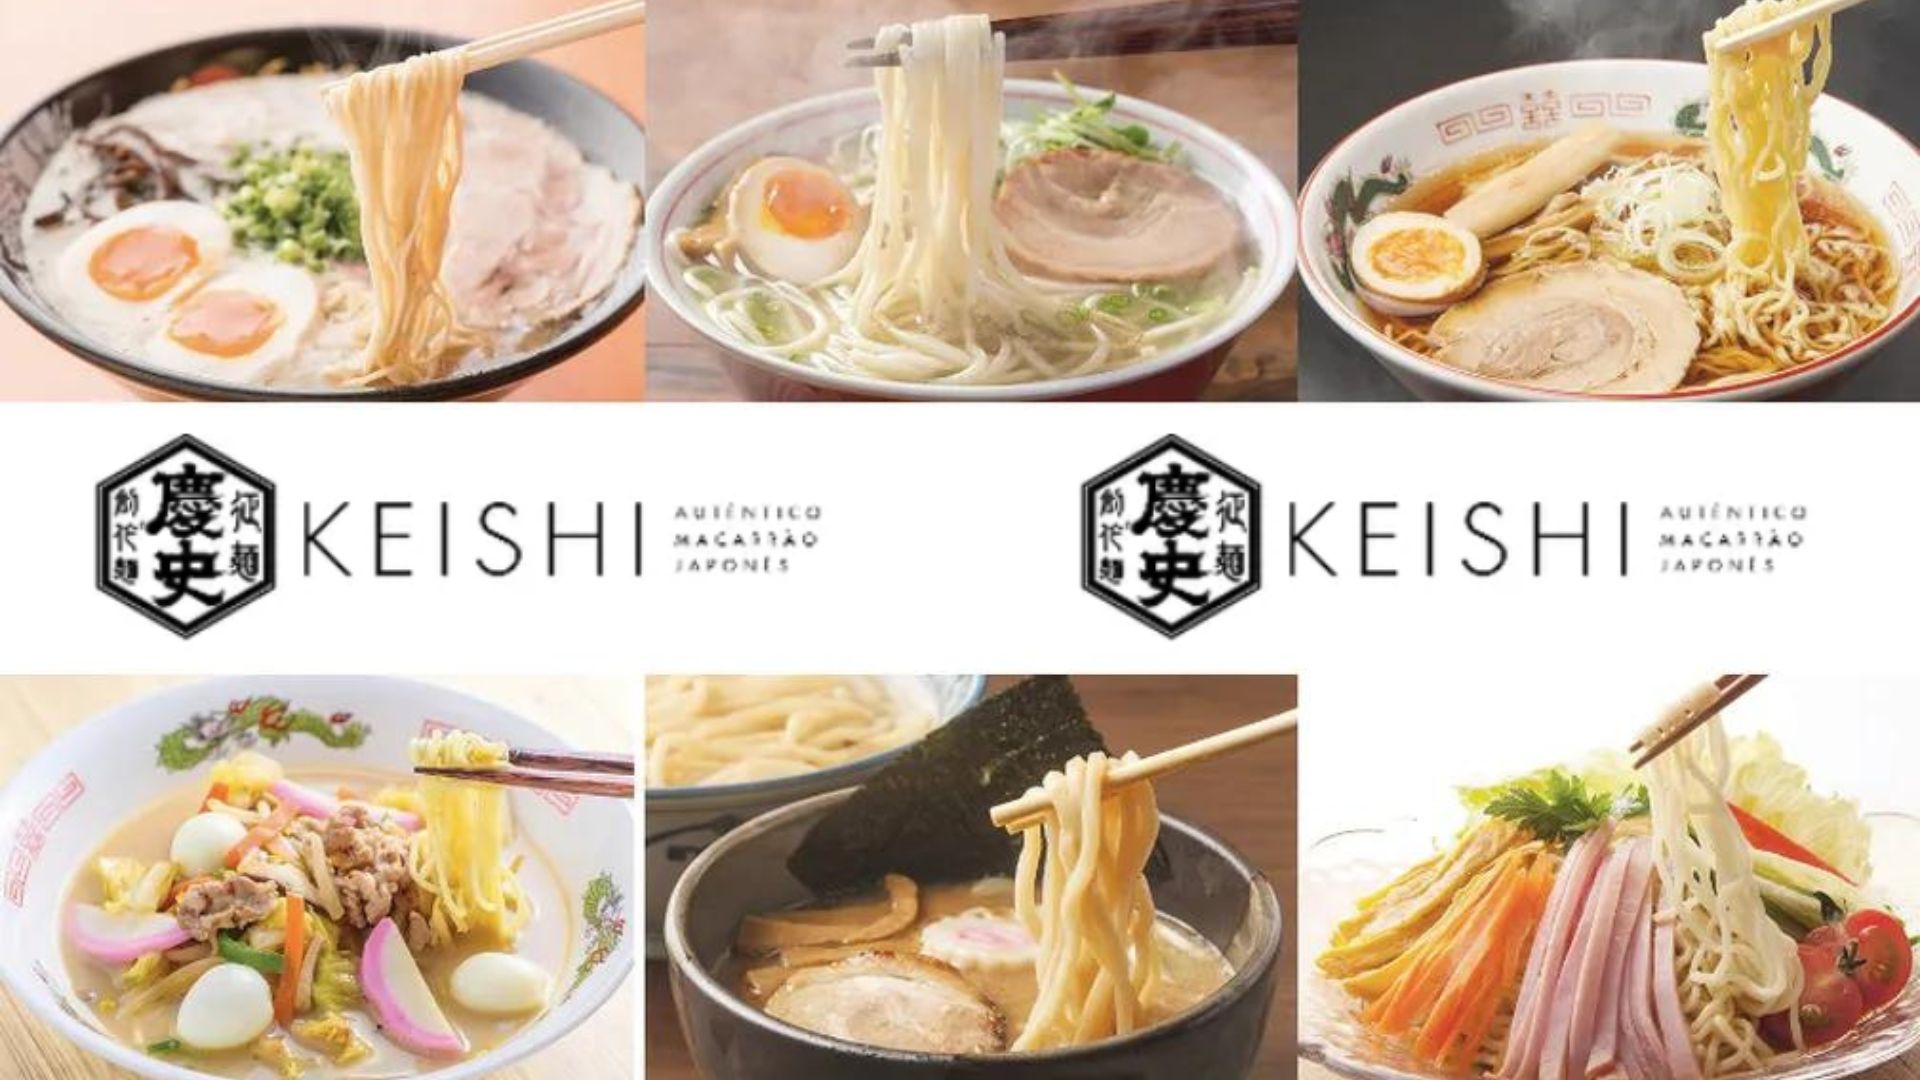 keishi macarrão contaminado